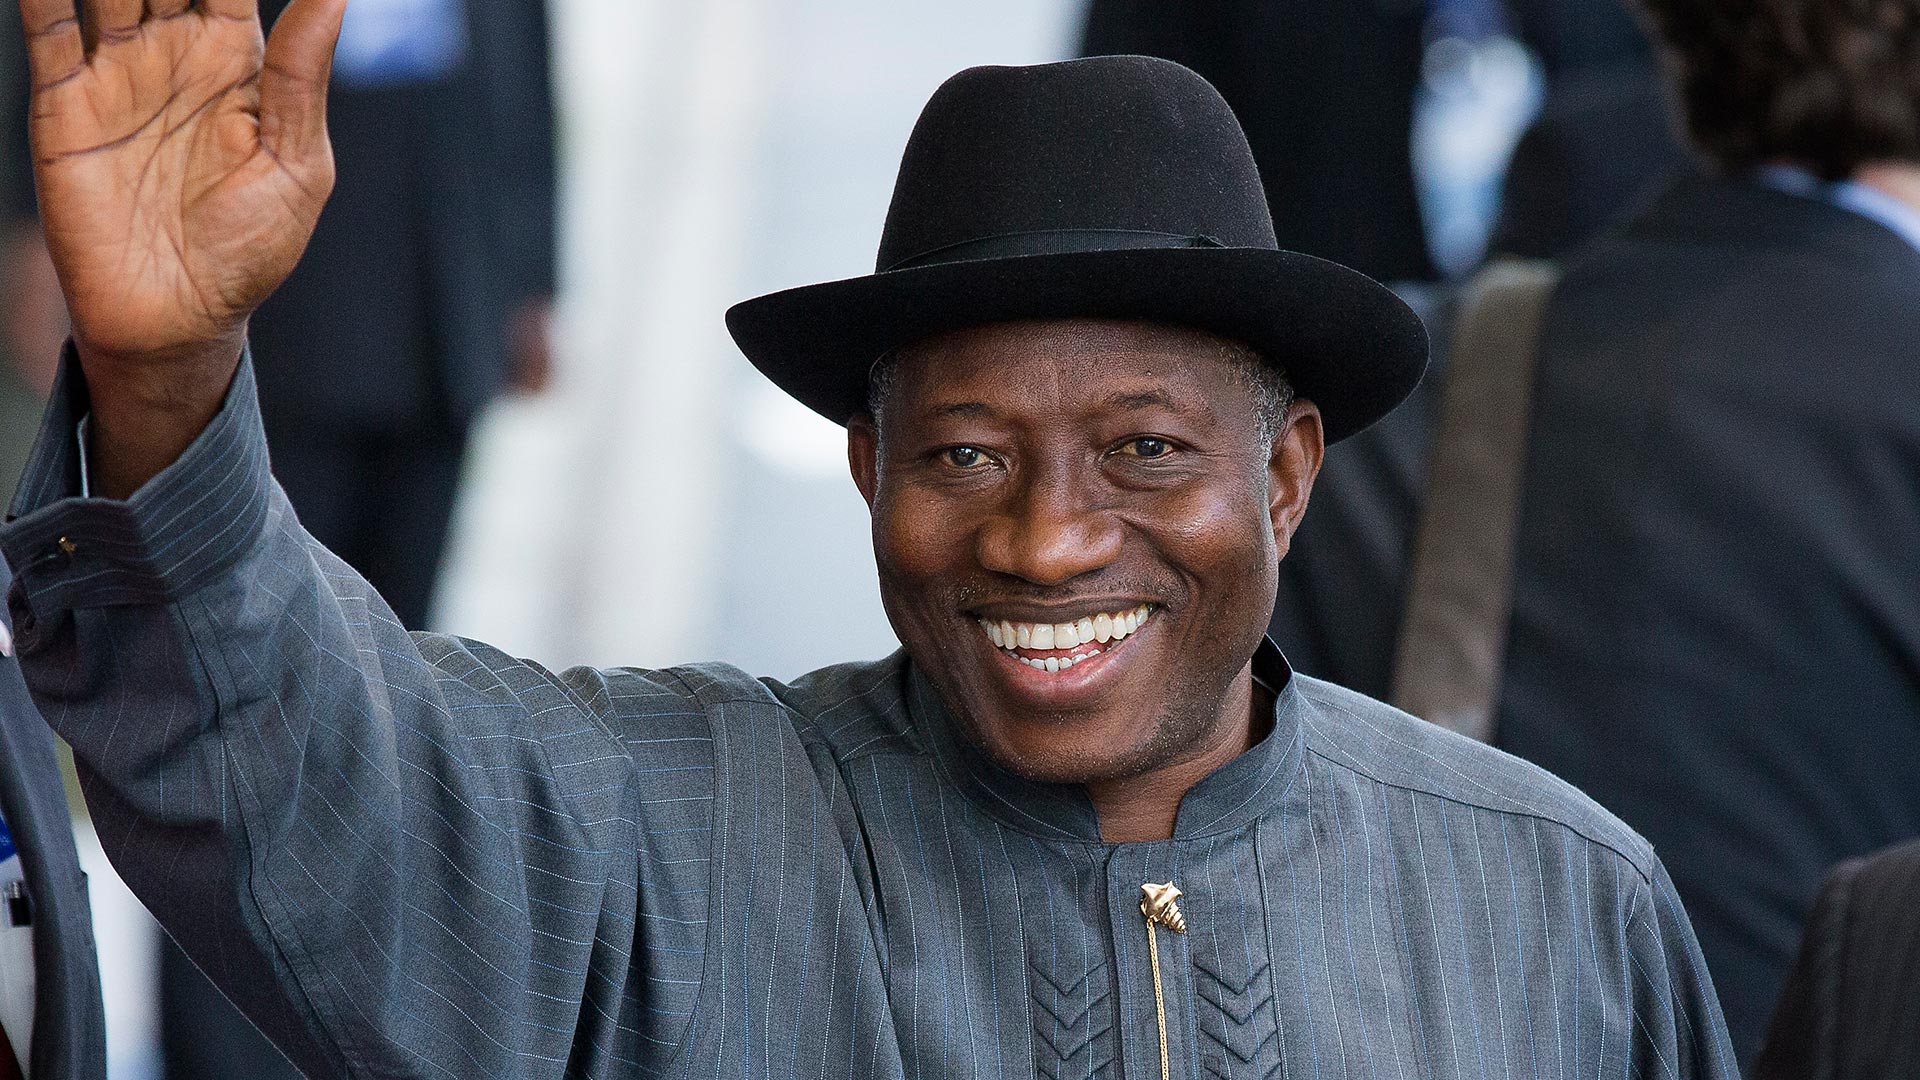 Nigeria President Goodluck Jonathan Niger Delta